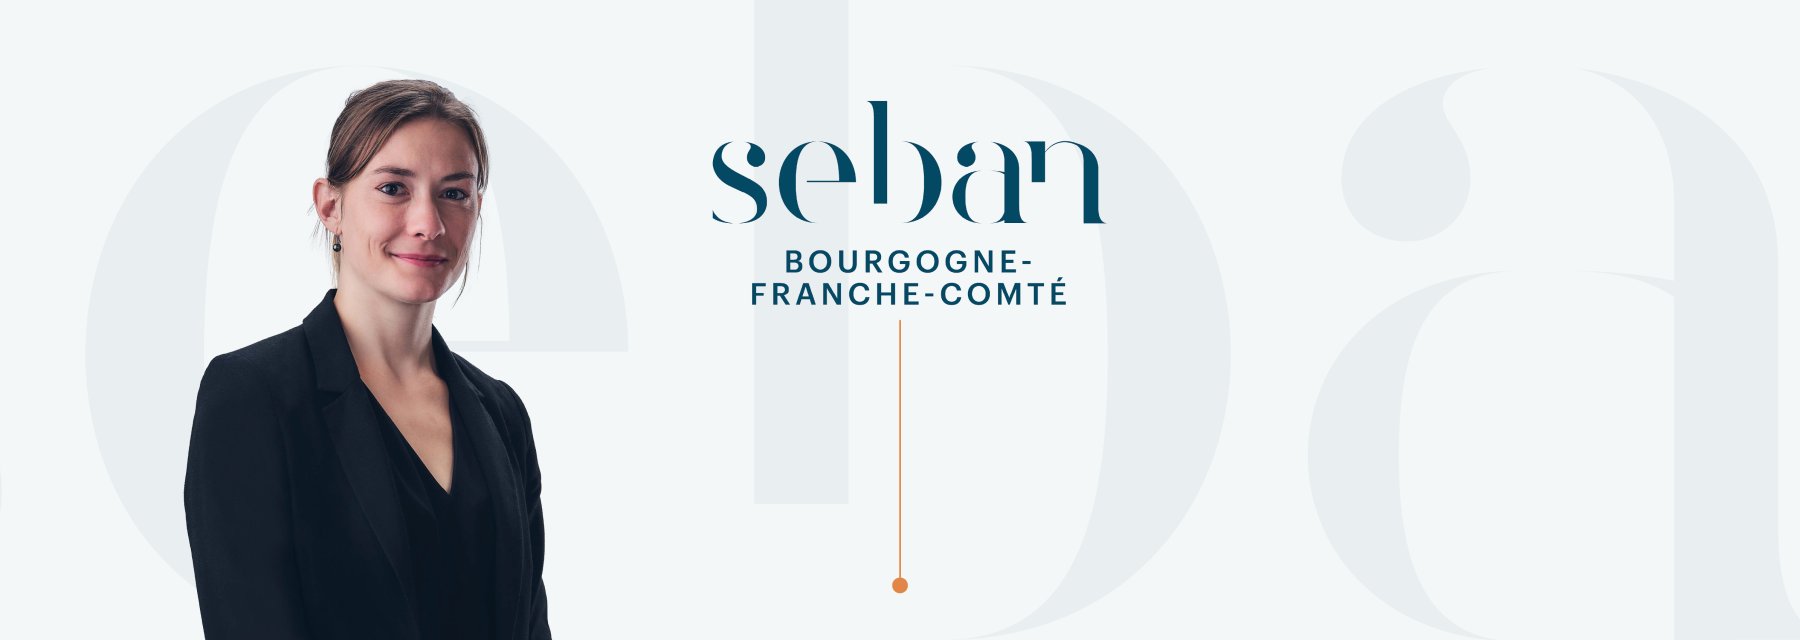 SEBAN BOURGOGNE-FRANCHE-COMTE